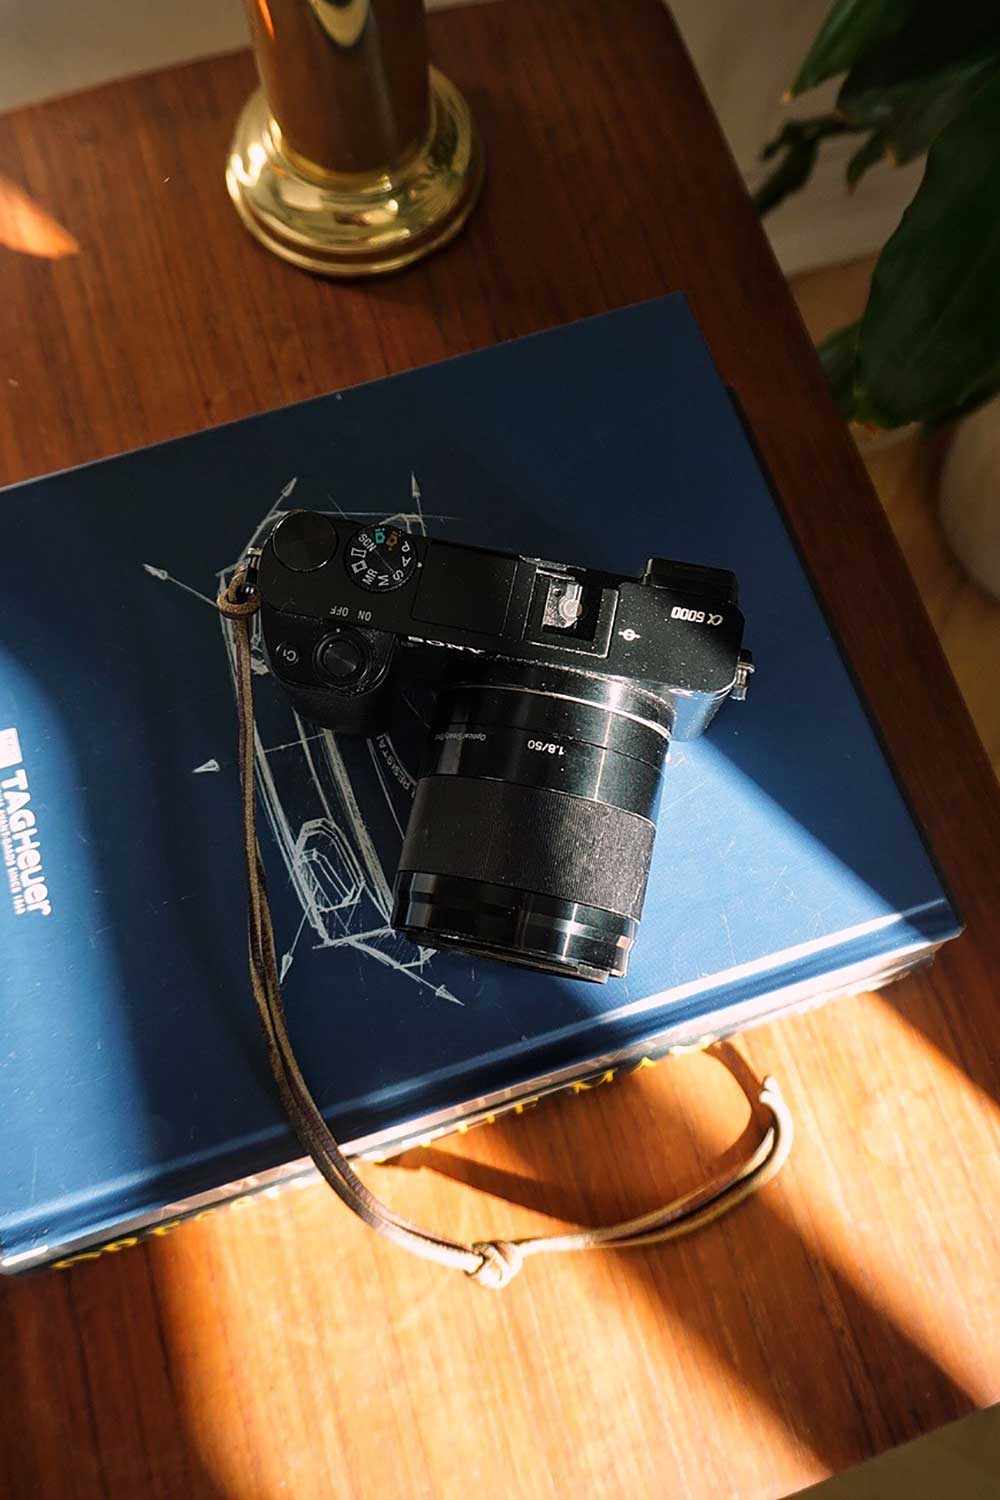 Casper Lundmose's Sony A6000 camera